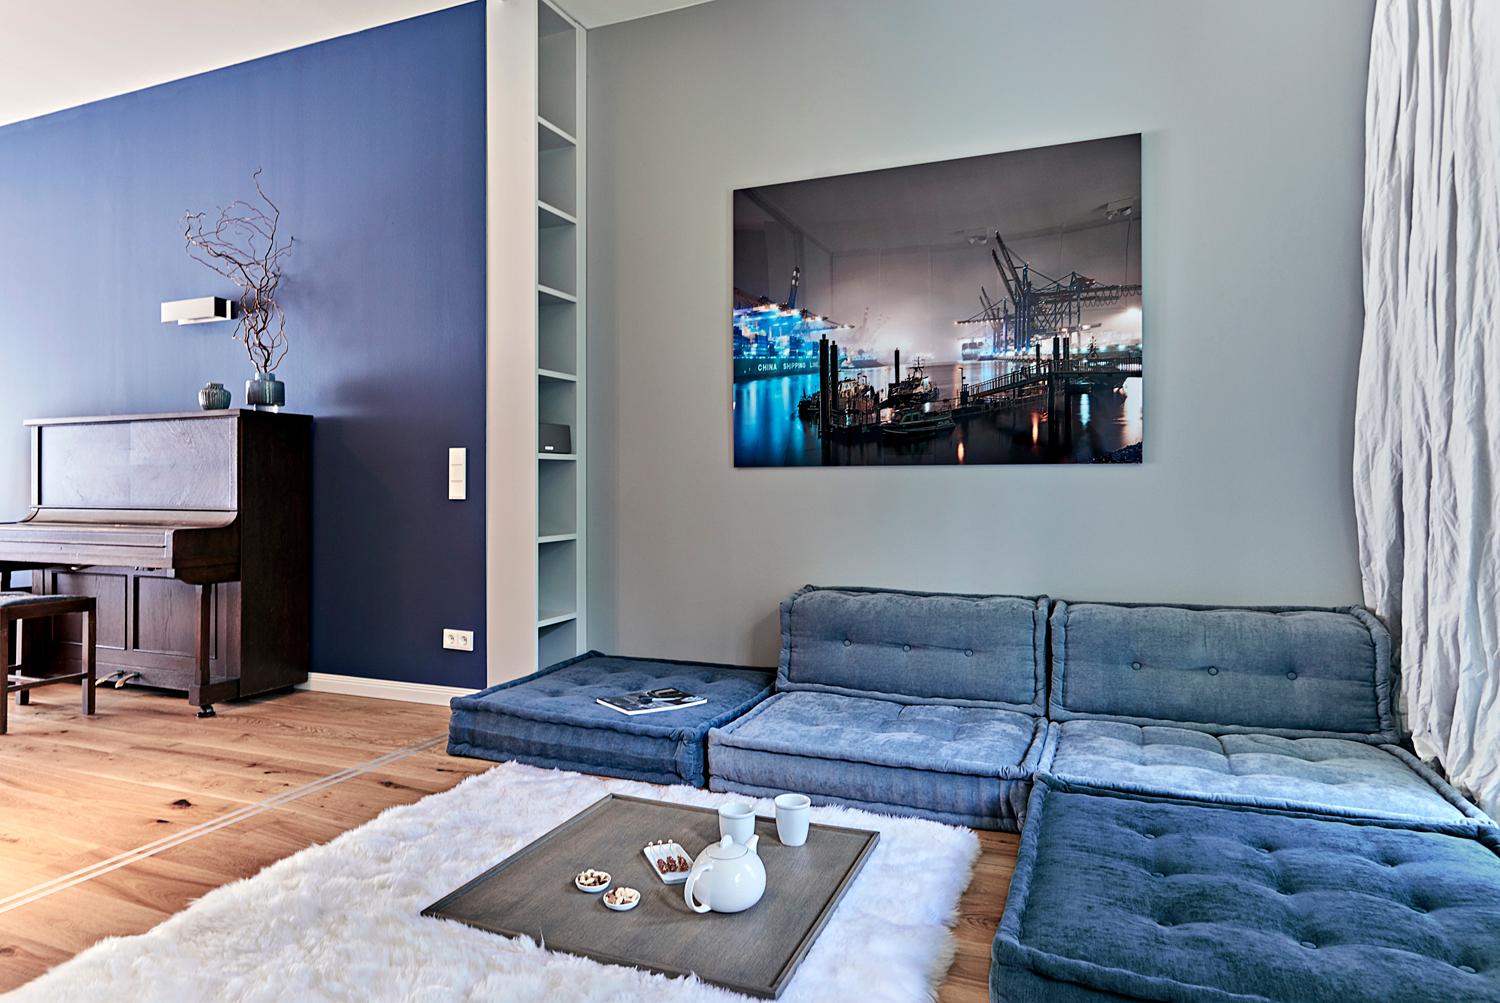 Lounge Bereich in Blautönen #tablett #loungebereich ©Michael Pfeiffer Fotografie